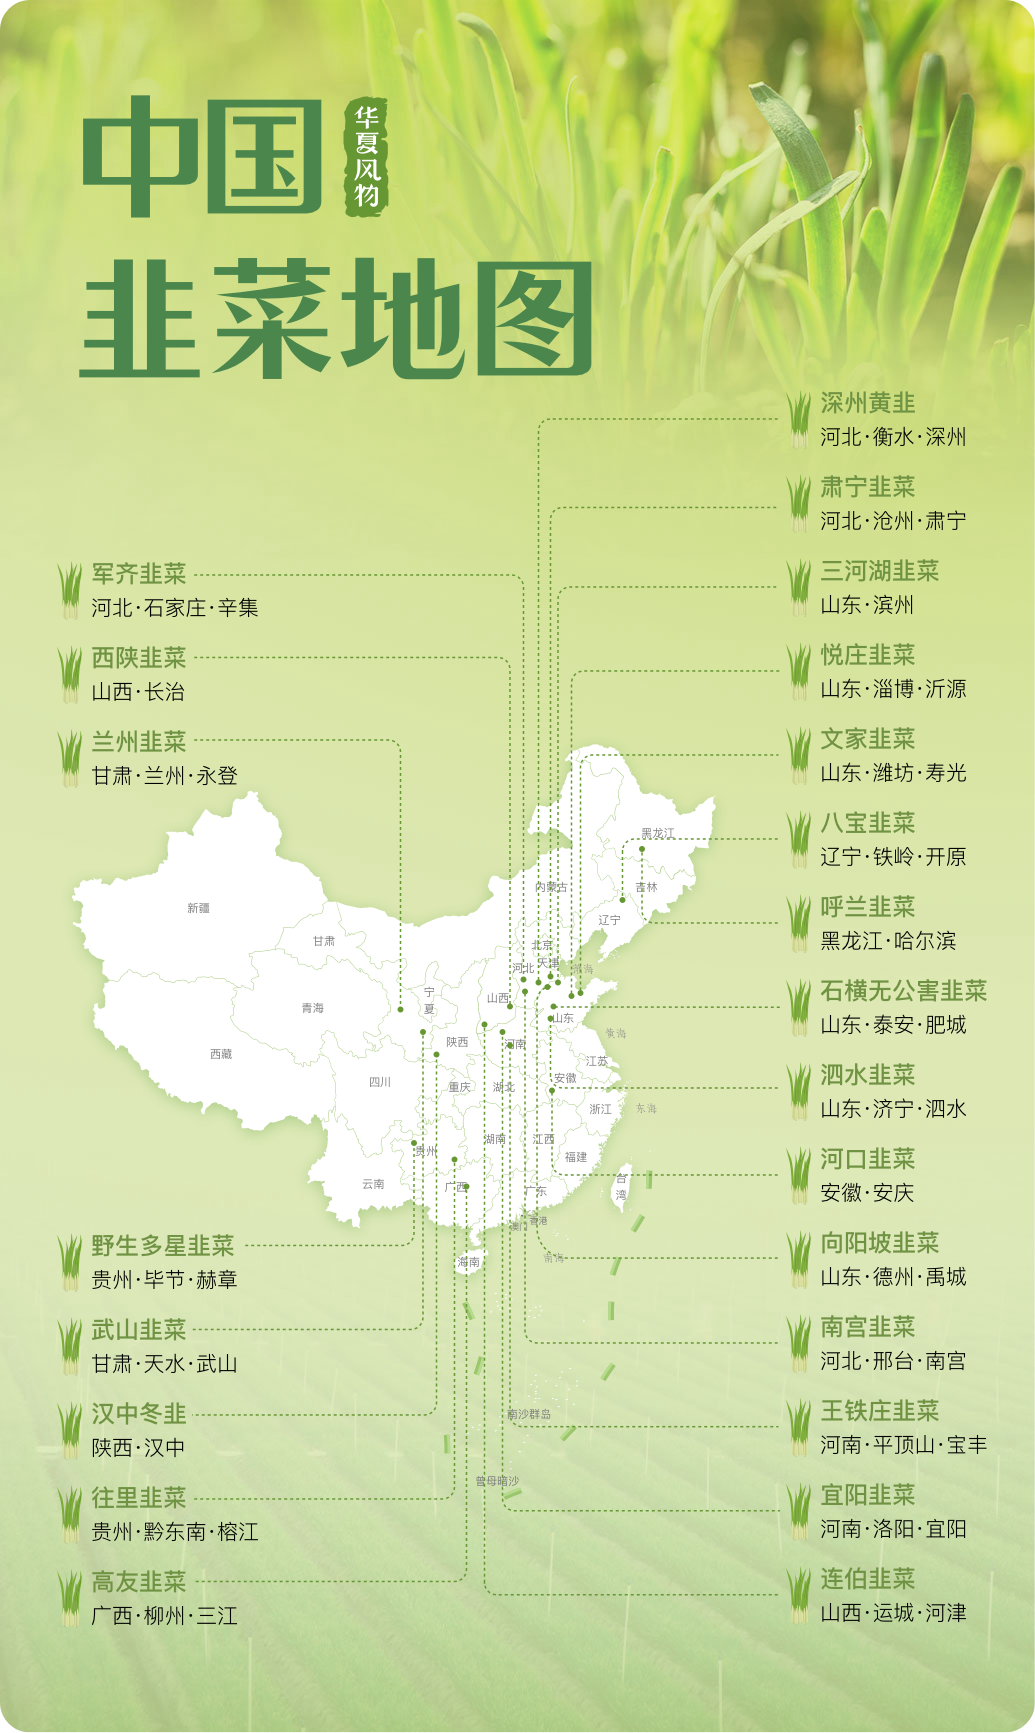 中国韭菜地图 ©华夏风物